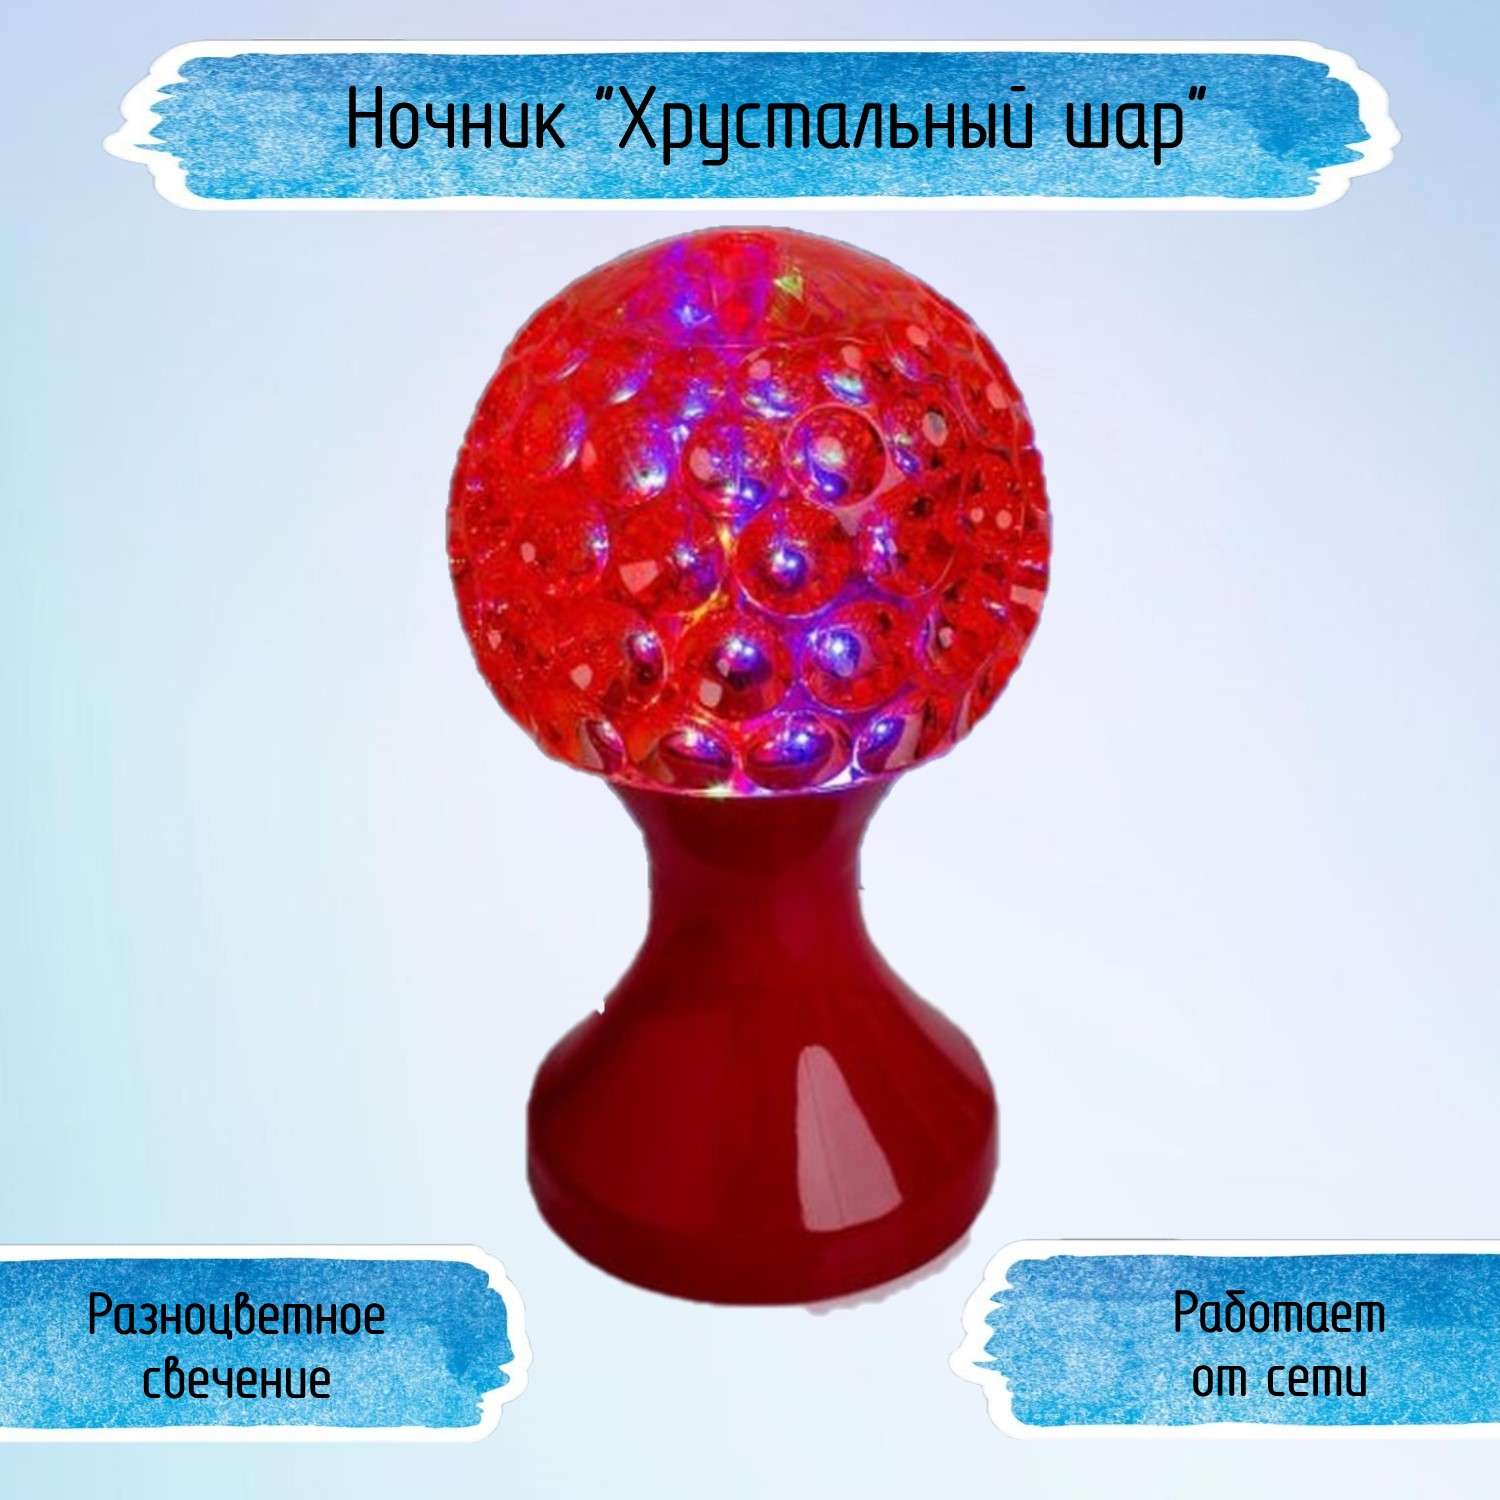 Ночник Uniglodis Кубок хрустальный шар красная подставка - фото 1